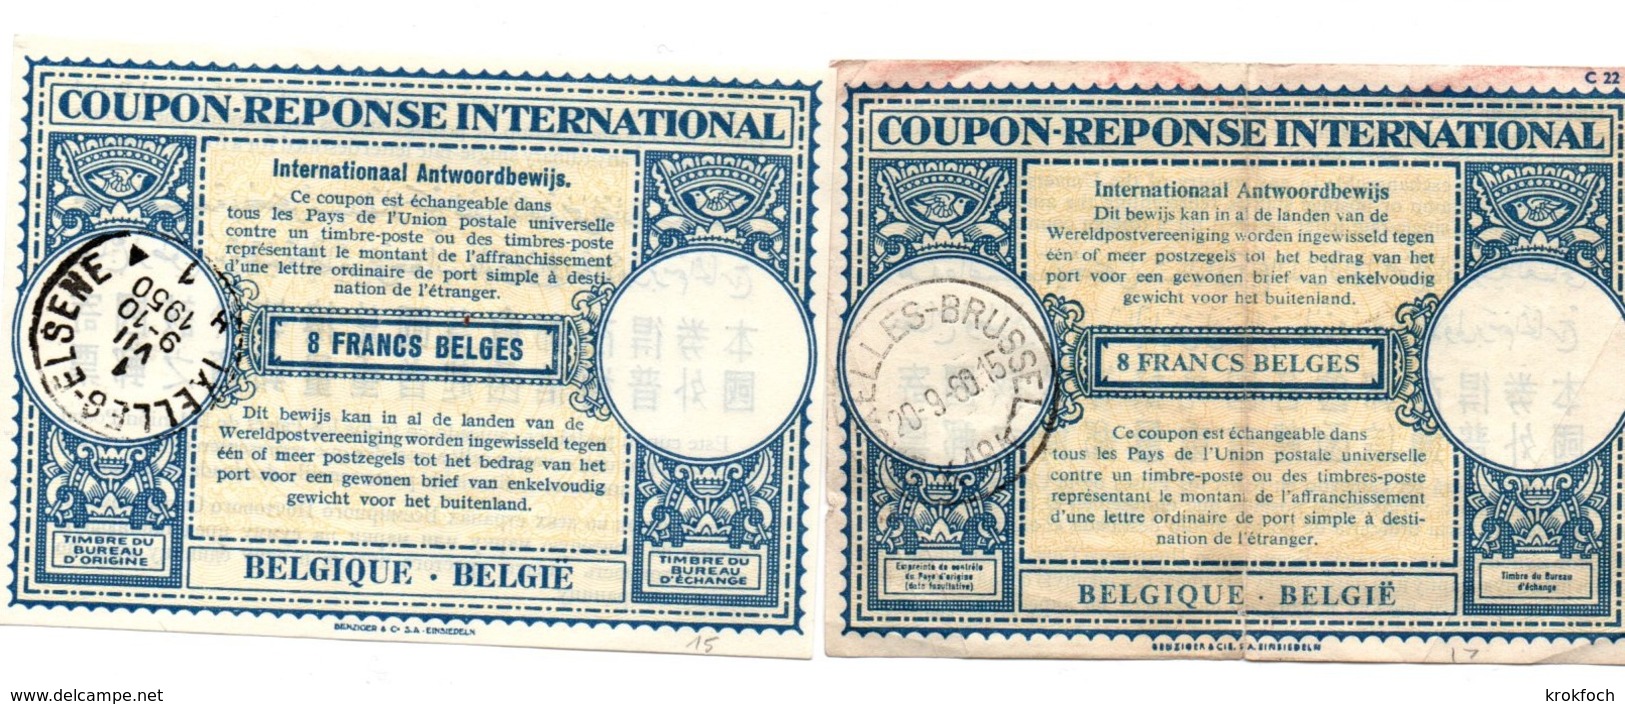 Coupon-réponse Belgique - 2 X 8 Francs Belges - Modèles Lo 15 & 17 - IRC CRI IAS - Ixelles - !!! Un Coupon Plié - Cupón-respuesta Internacionales